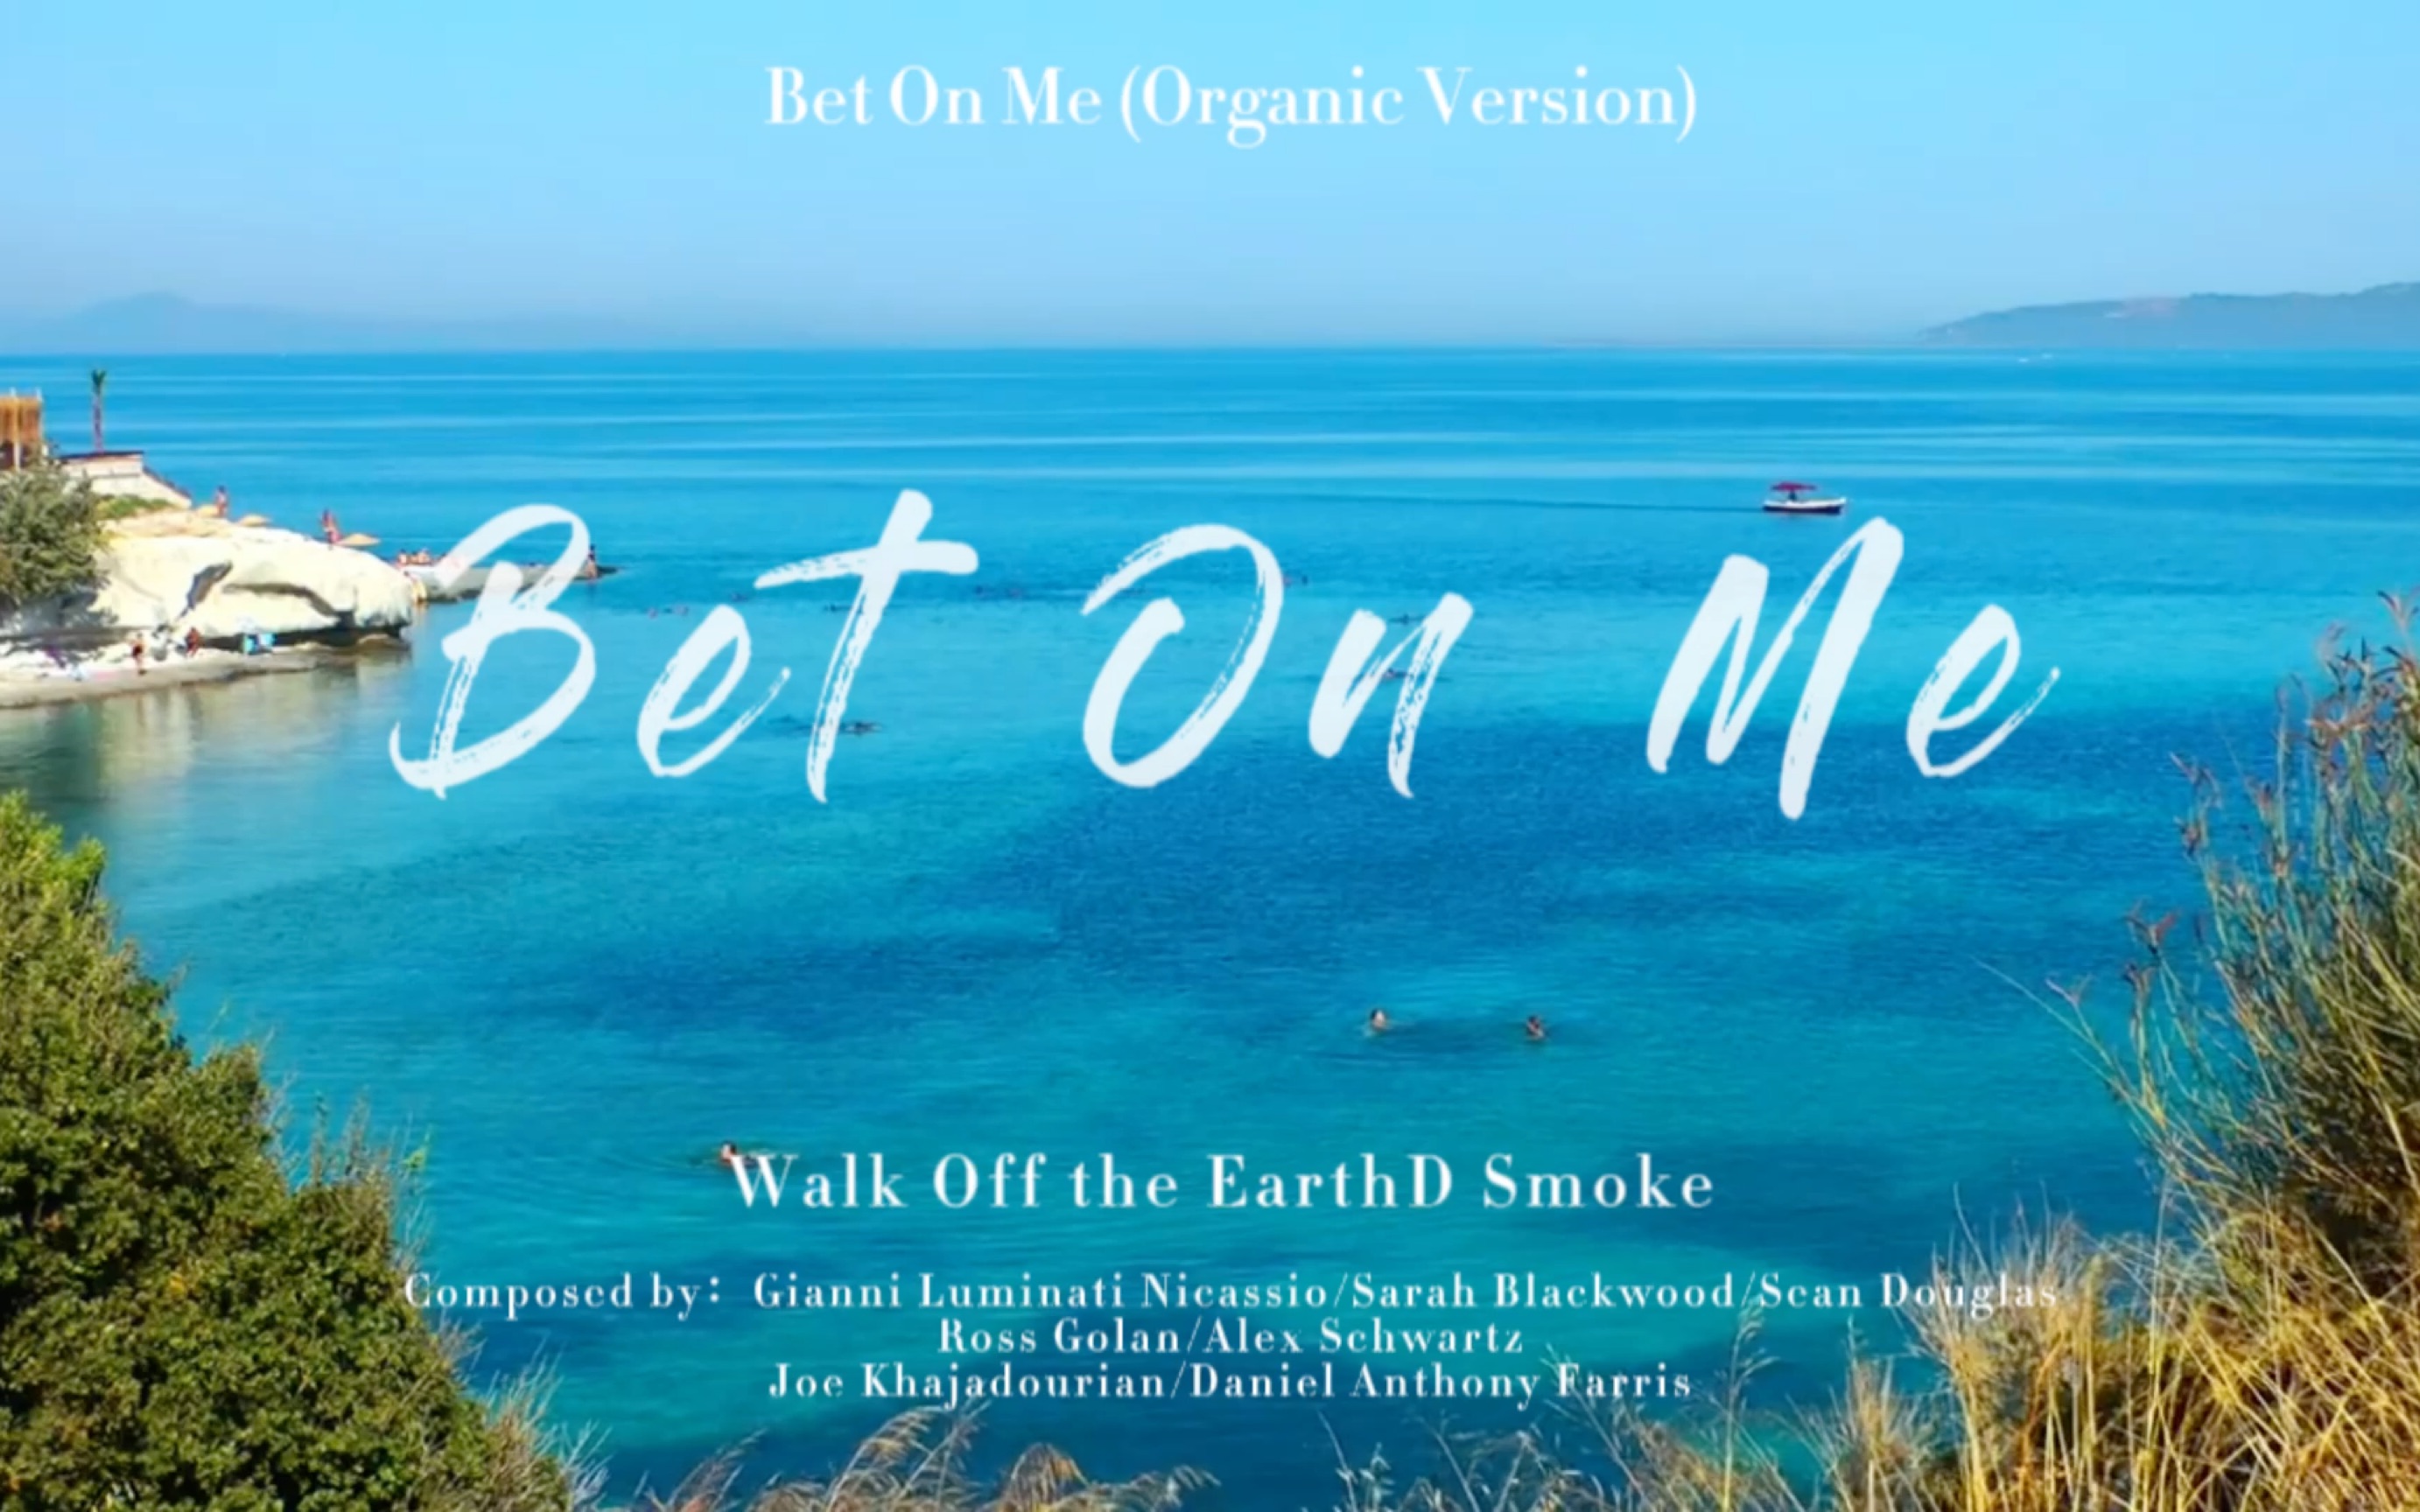 “如果没有人把赌注下在你身上,那就把赌注押在自己身上”Bet On Me(Organic Version)|Walk Off the Earth/D Smoke